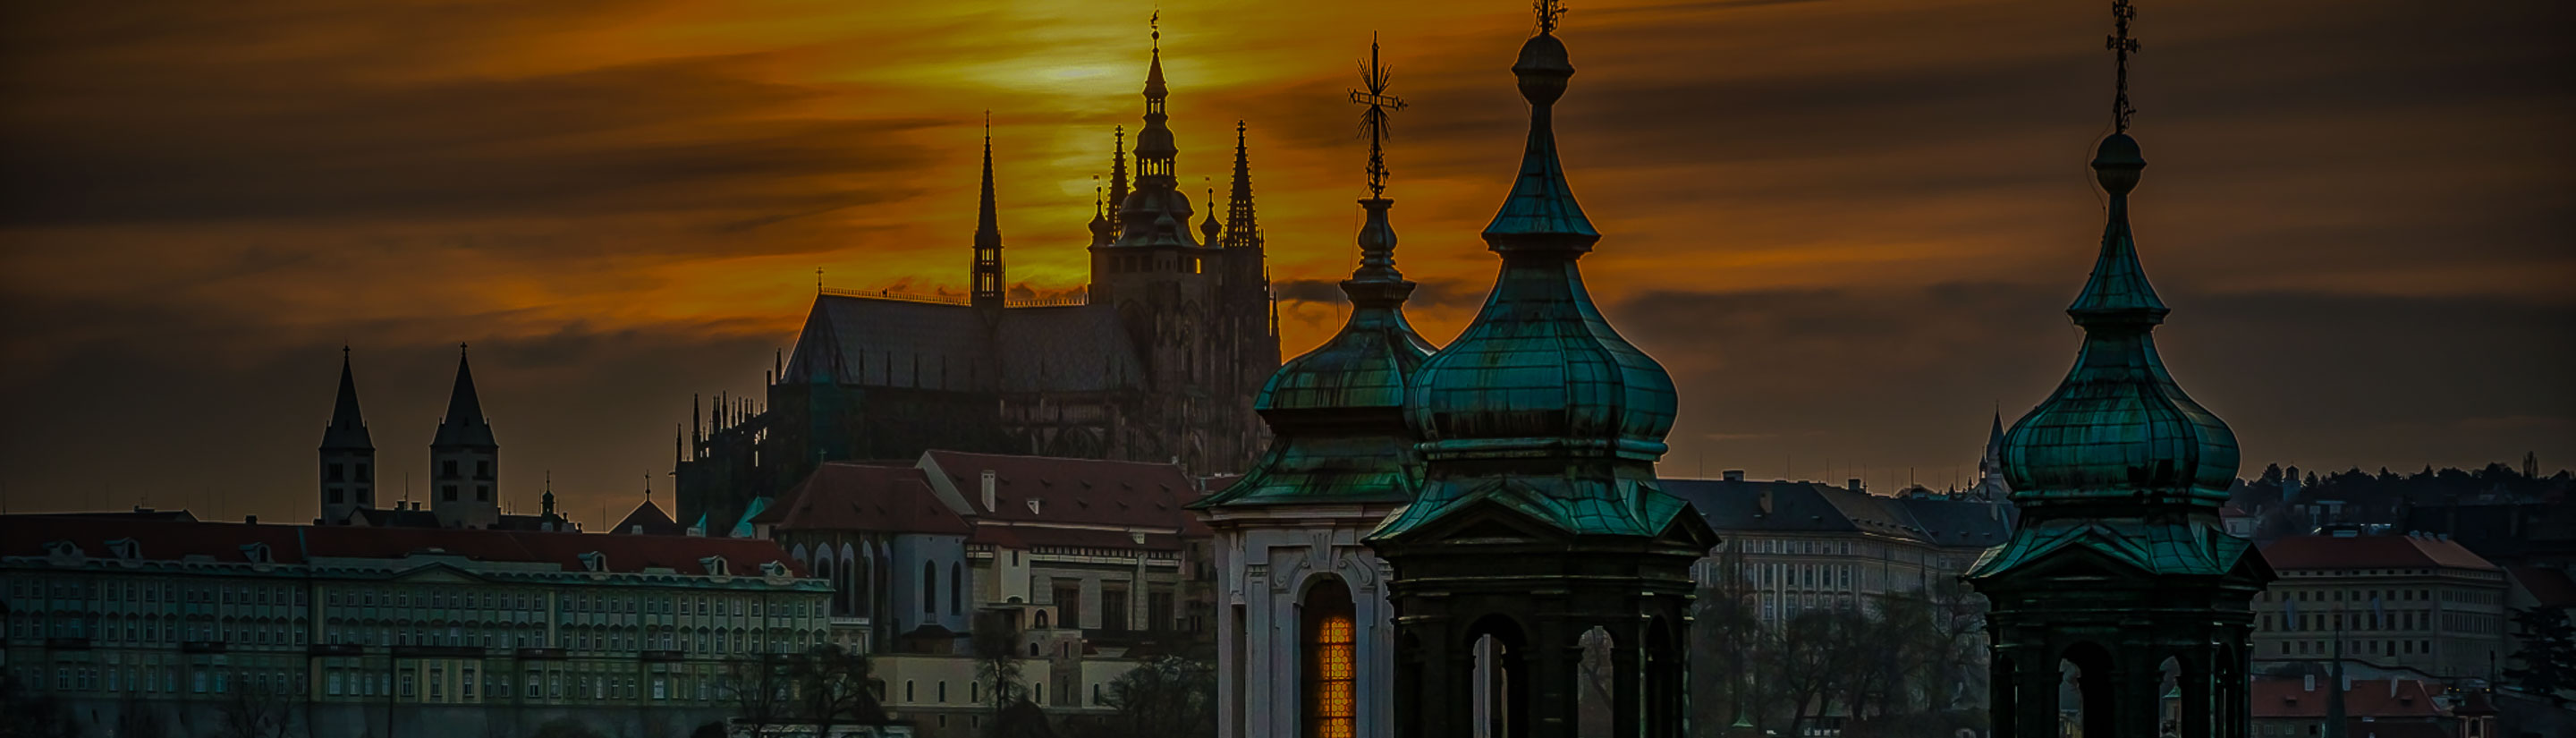 Tschechien Prag Sonnenuntergang Dächer